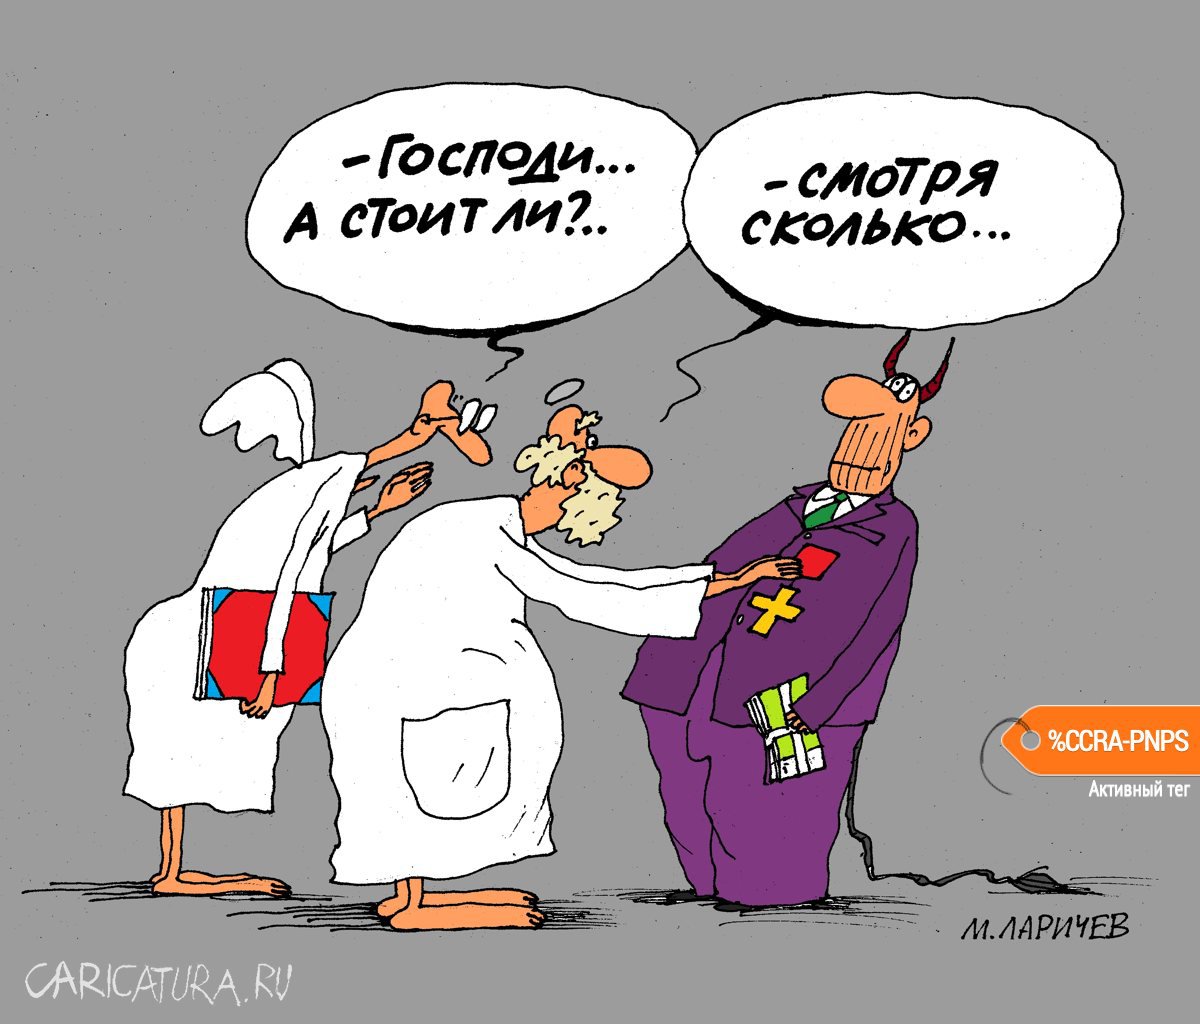 Карикатура "Крест", Михаил Ларичев